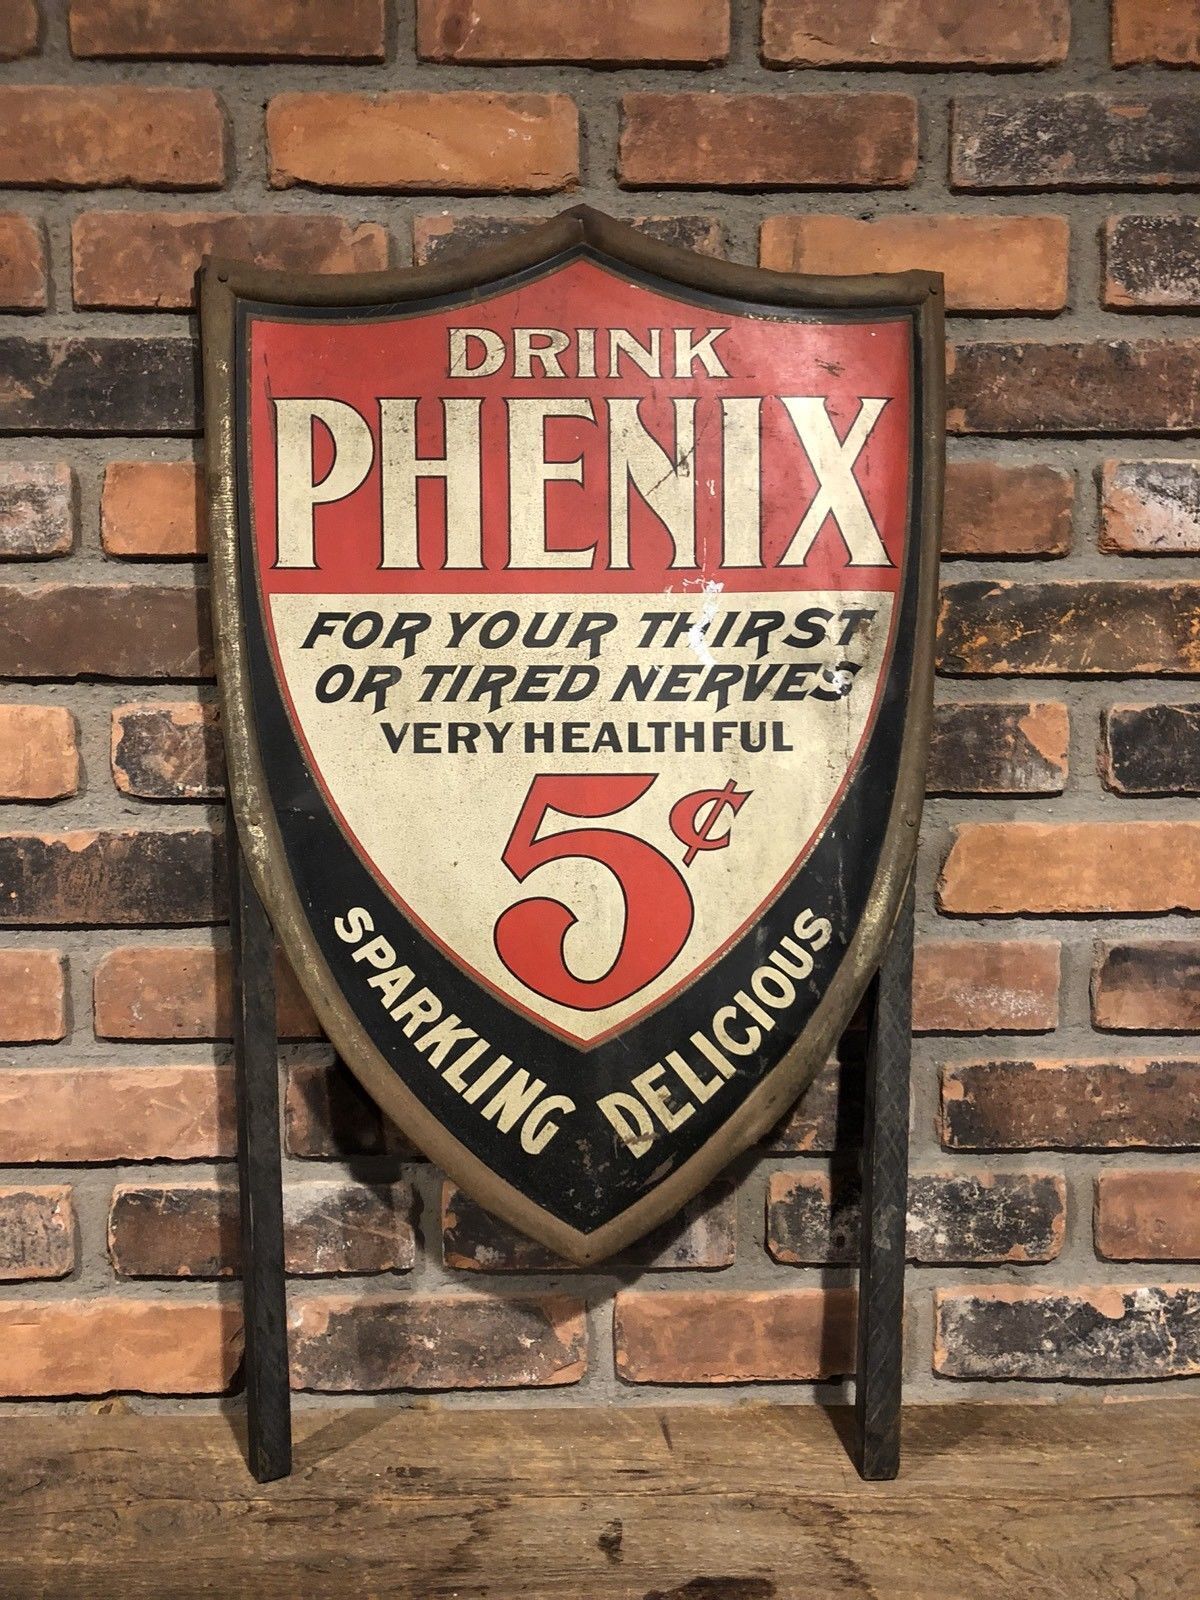 c.1910-1920s DRINK PHENIX 5 C Healthful Original Embossed Cola Soda Sign RARE+++